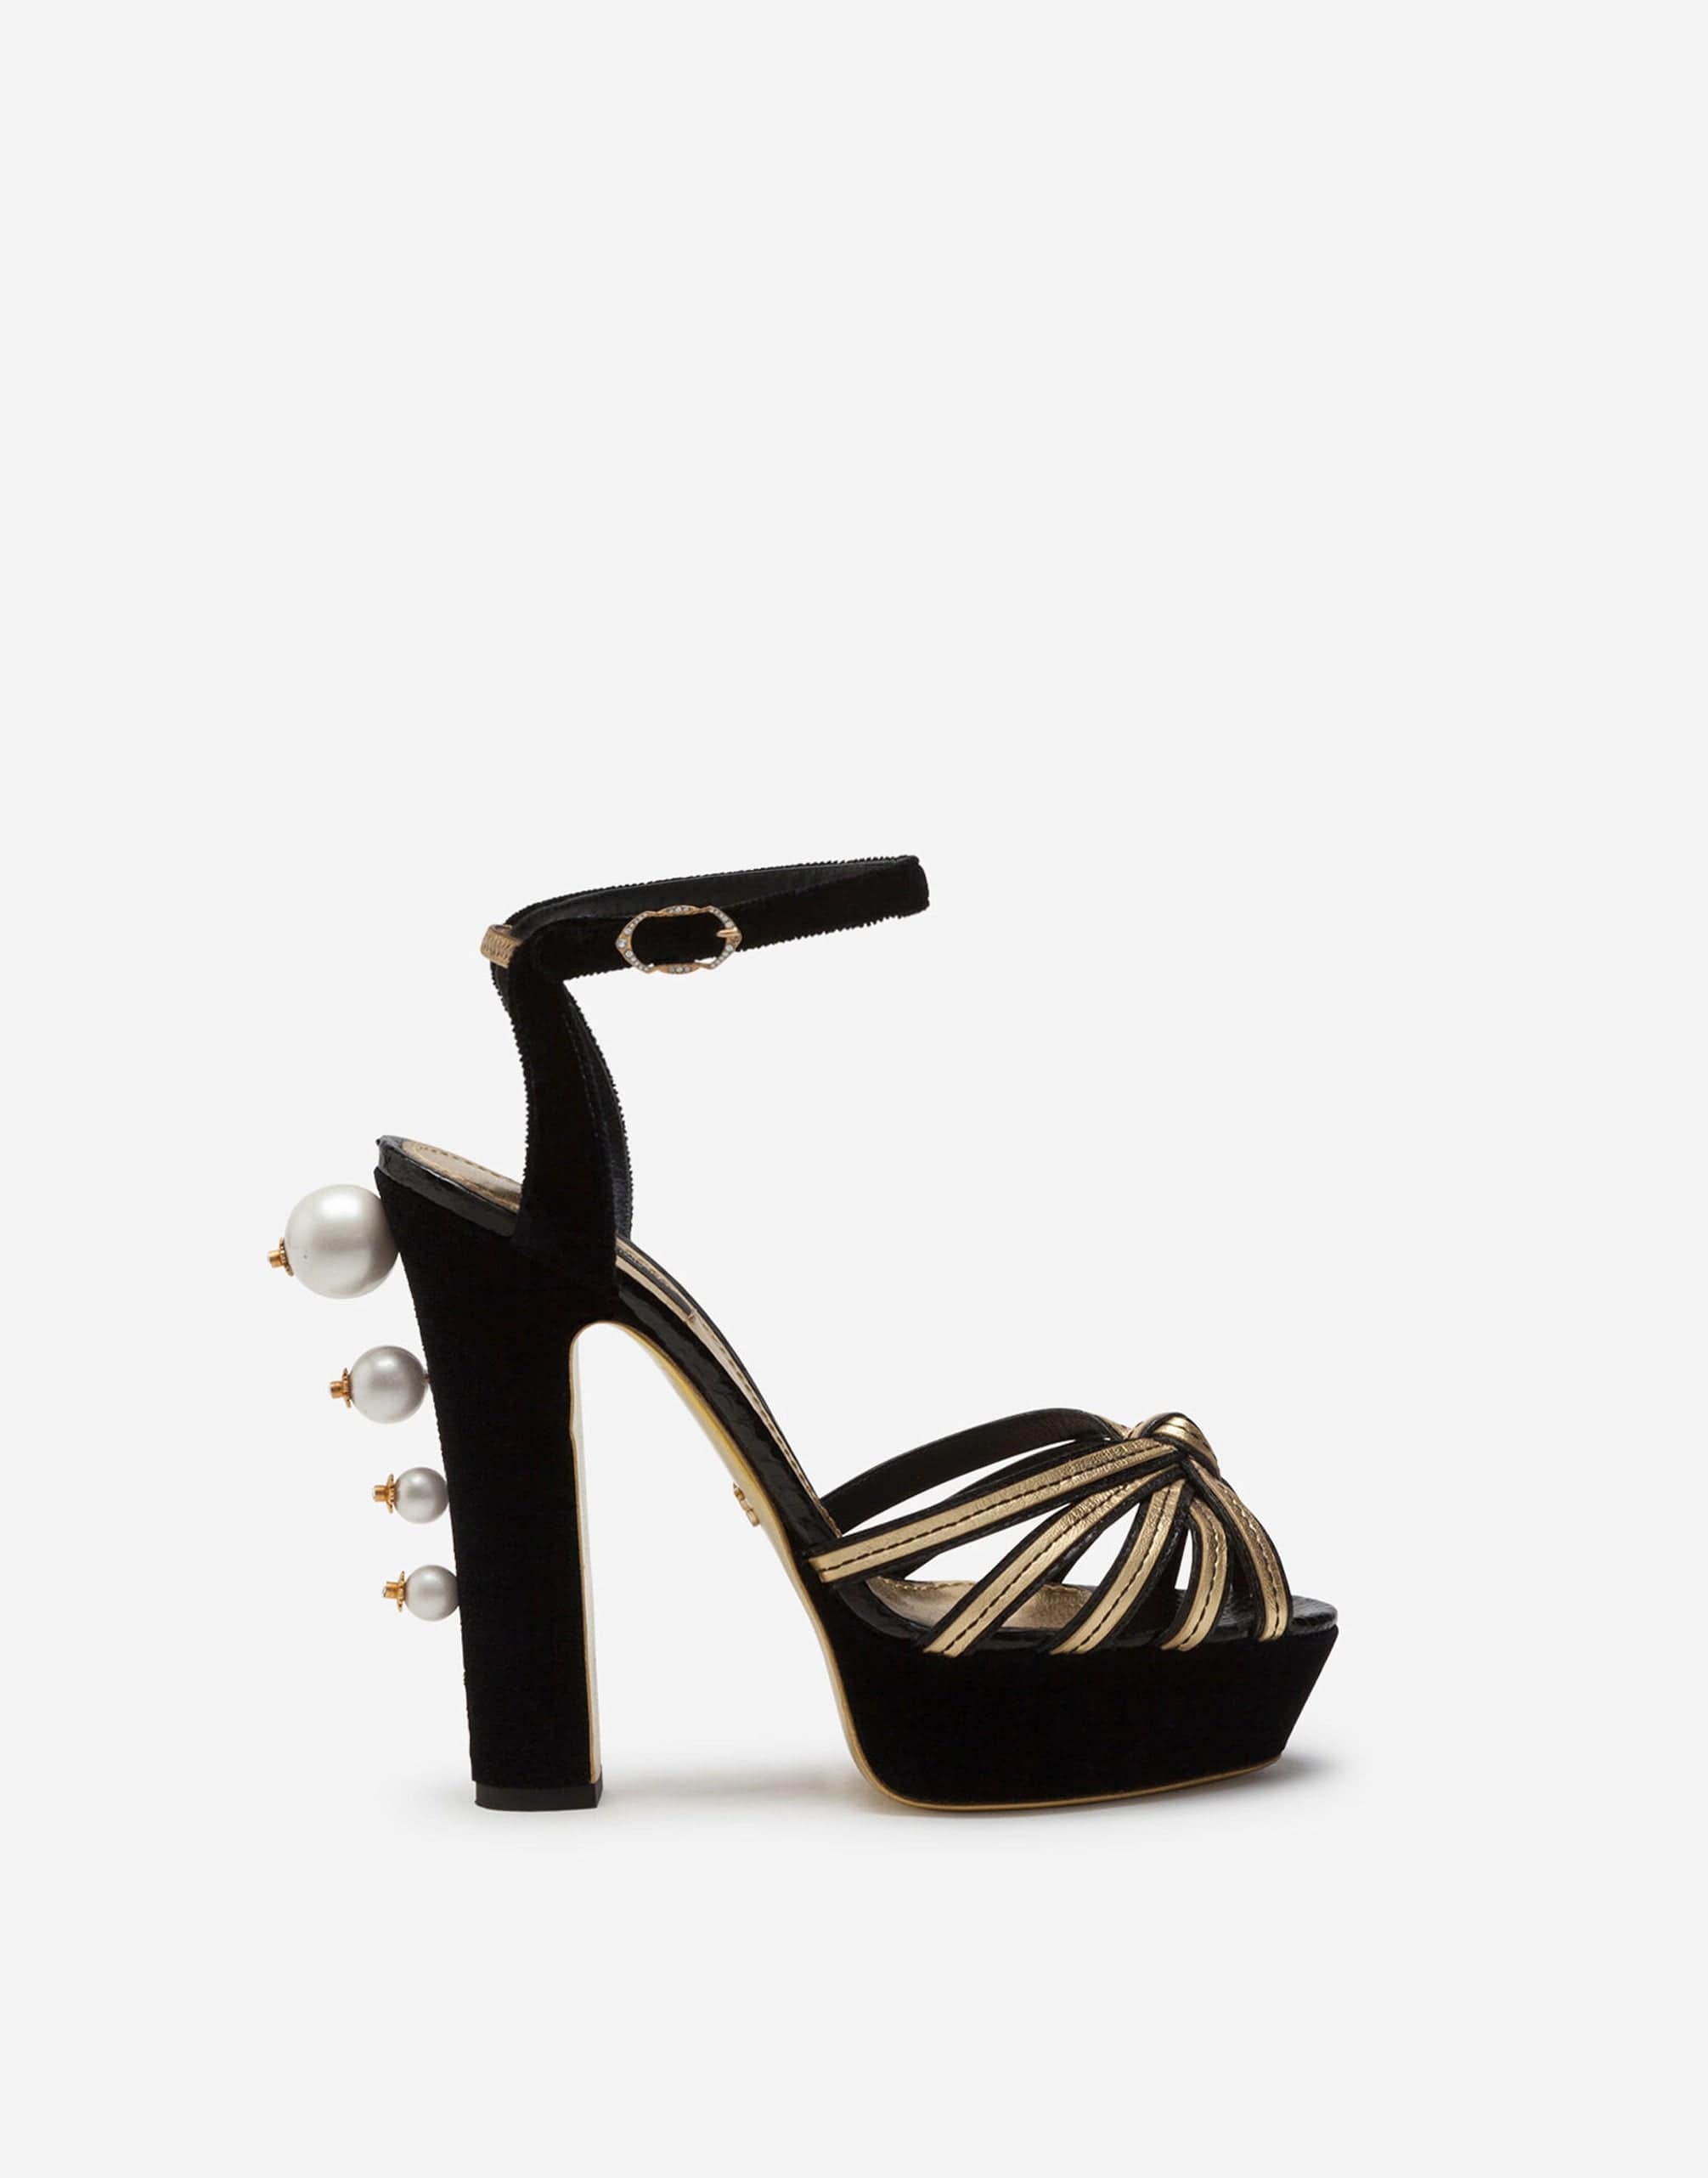 Dolce & Gabbana Black Gold Embellished Heels Sandals Shoes